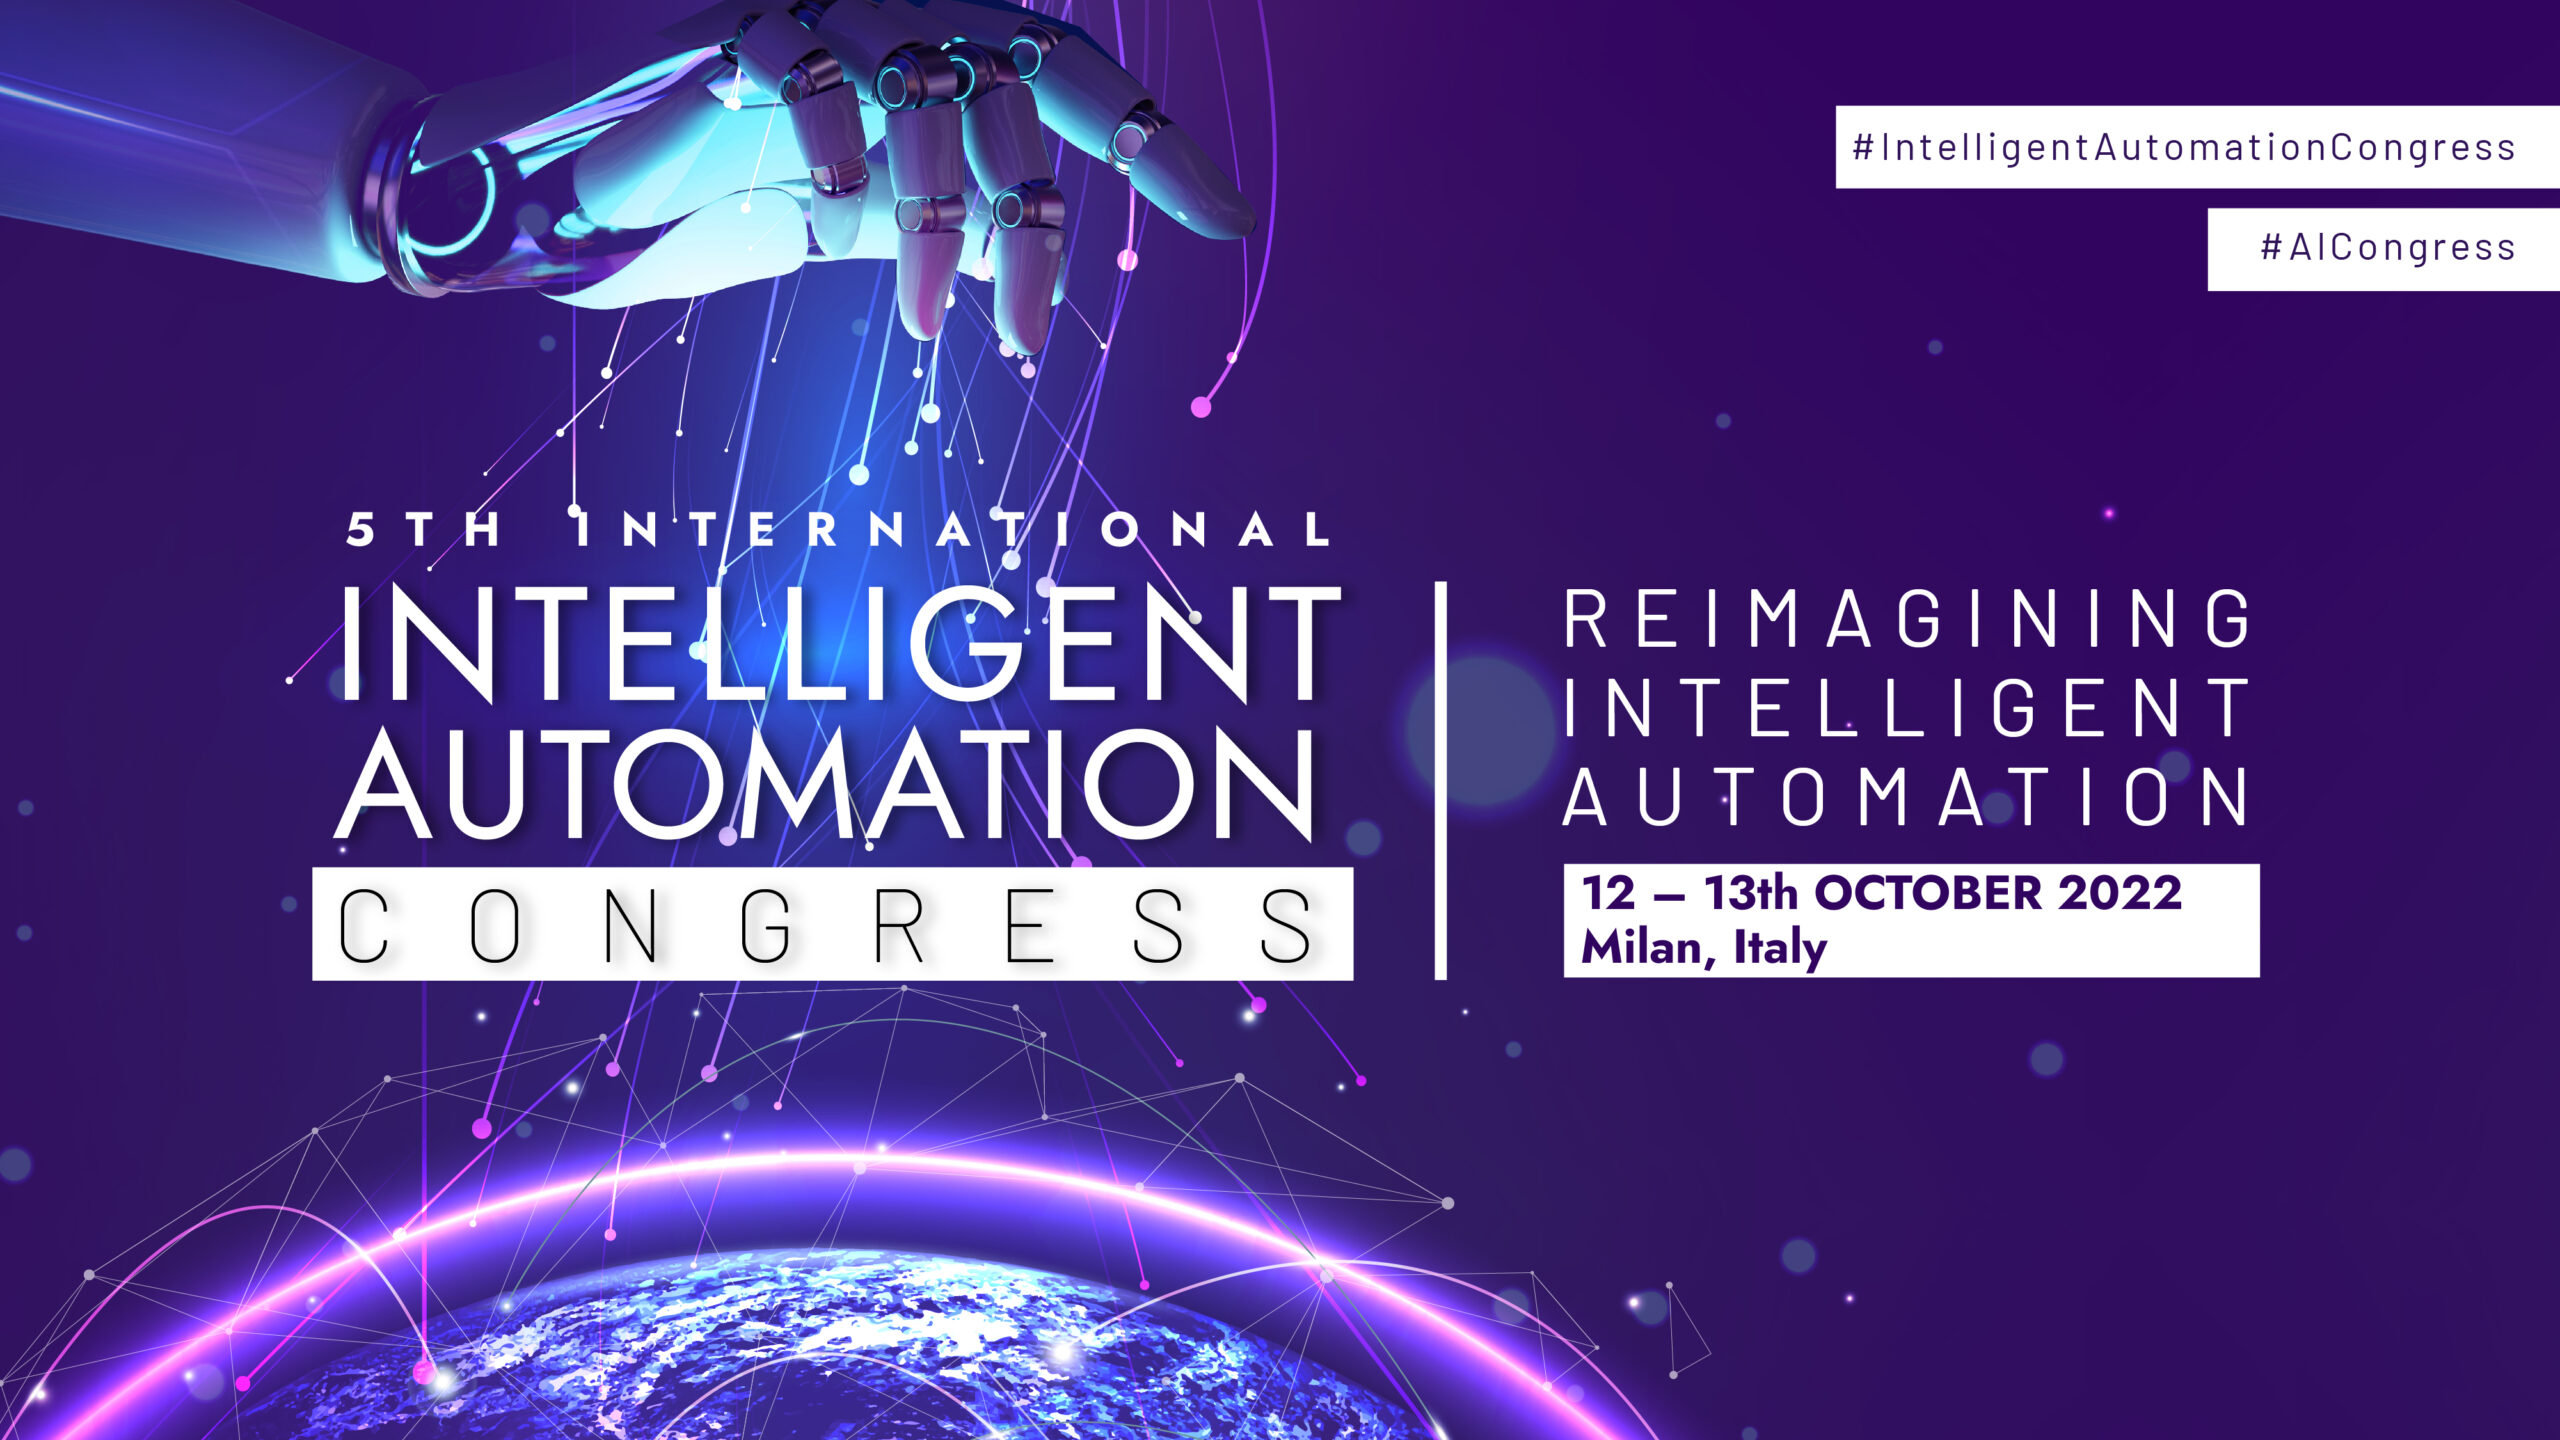 Milano e Intelligenza Artificiale: al via la V edizione dell’IA Congress, una due-giorni con ospiti internazionali